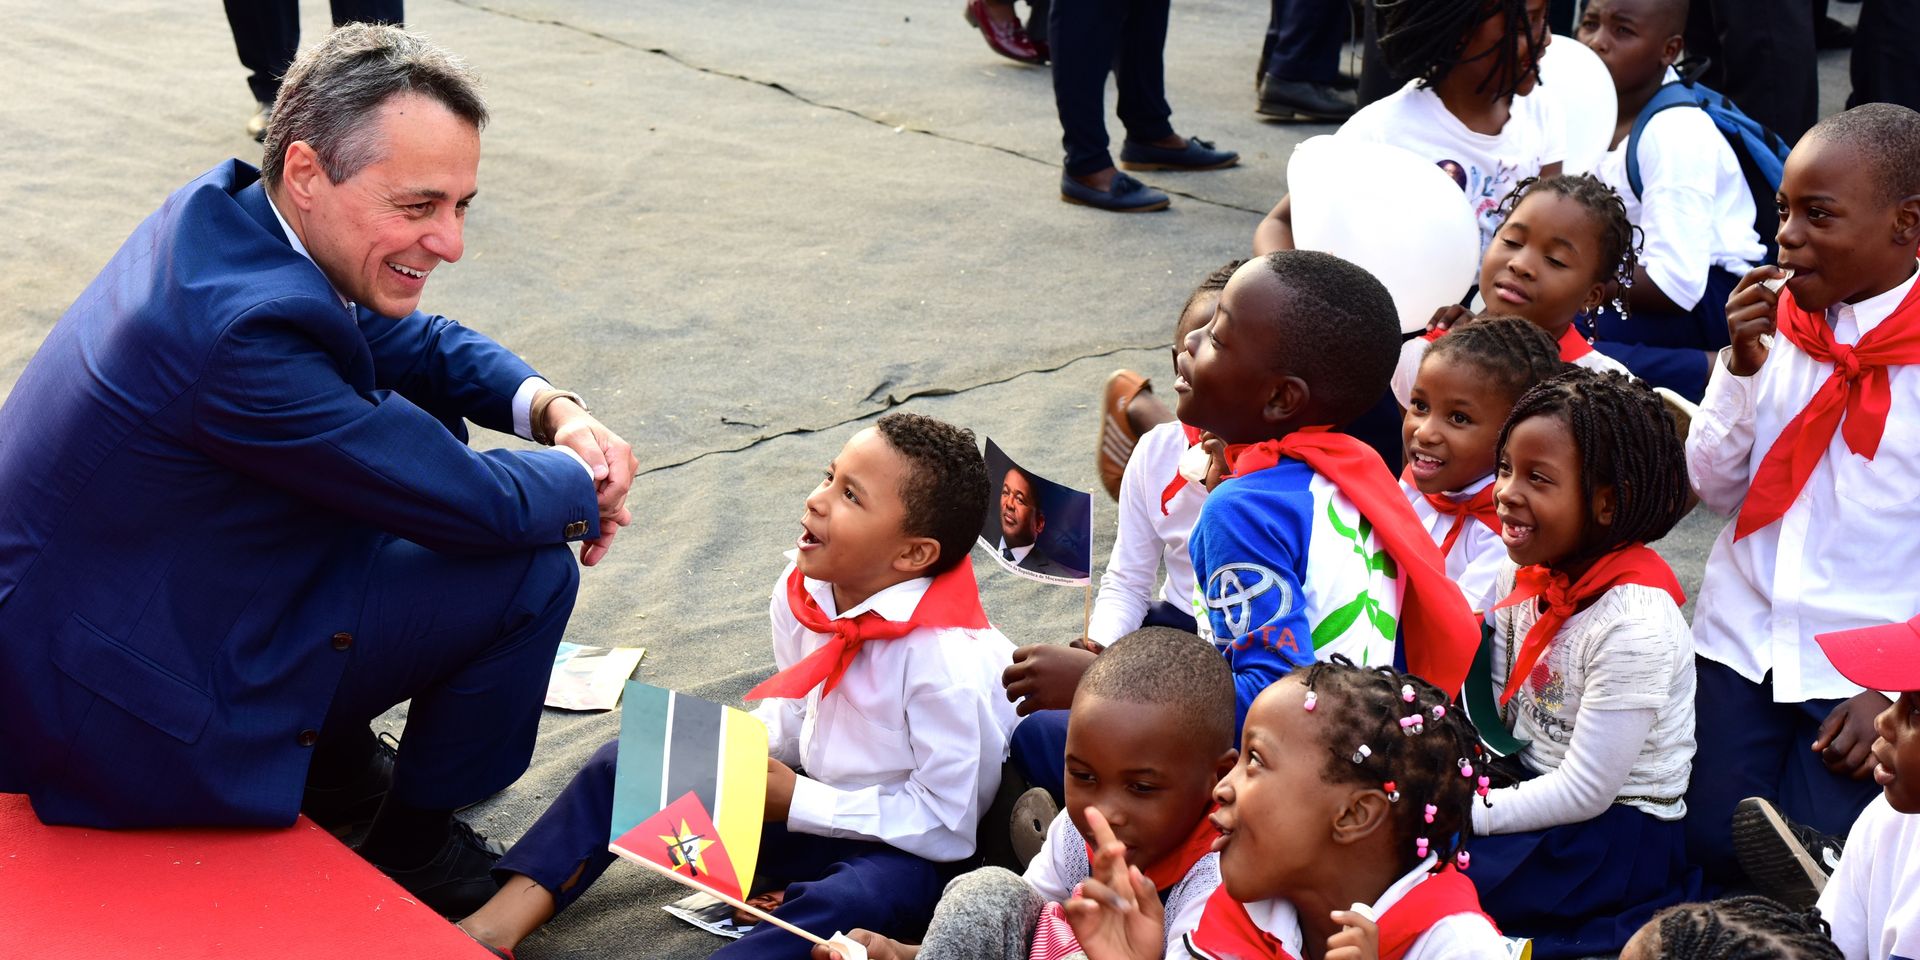 Il consigliere federale Ignazio Cassis, seduto a terra, ride insieme ad alcuni bambini della regione incontrati durante un viaggio in Africa. 